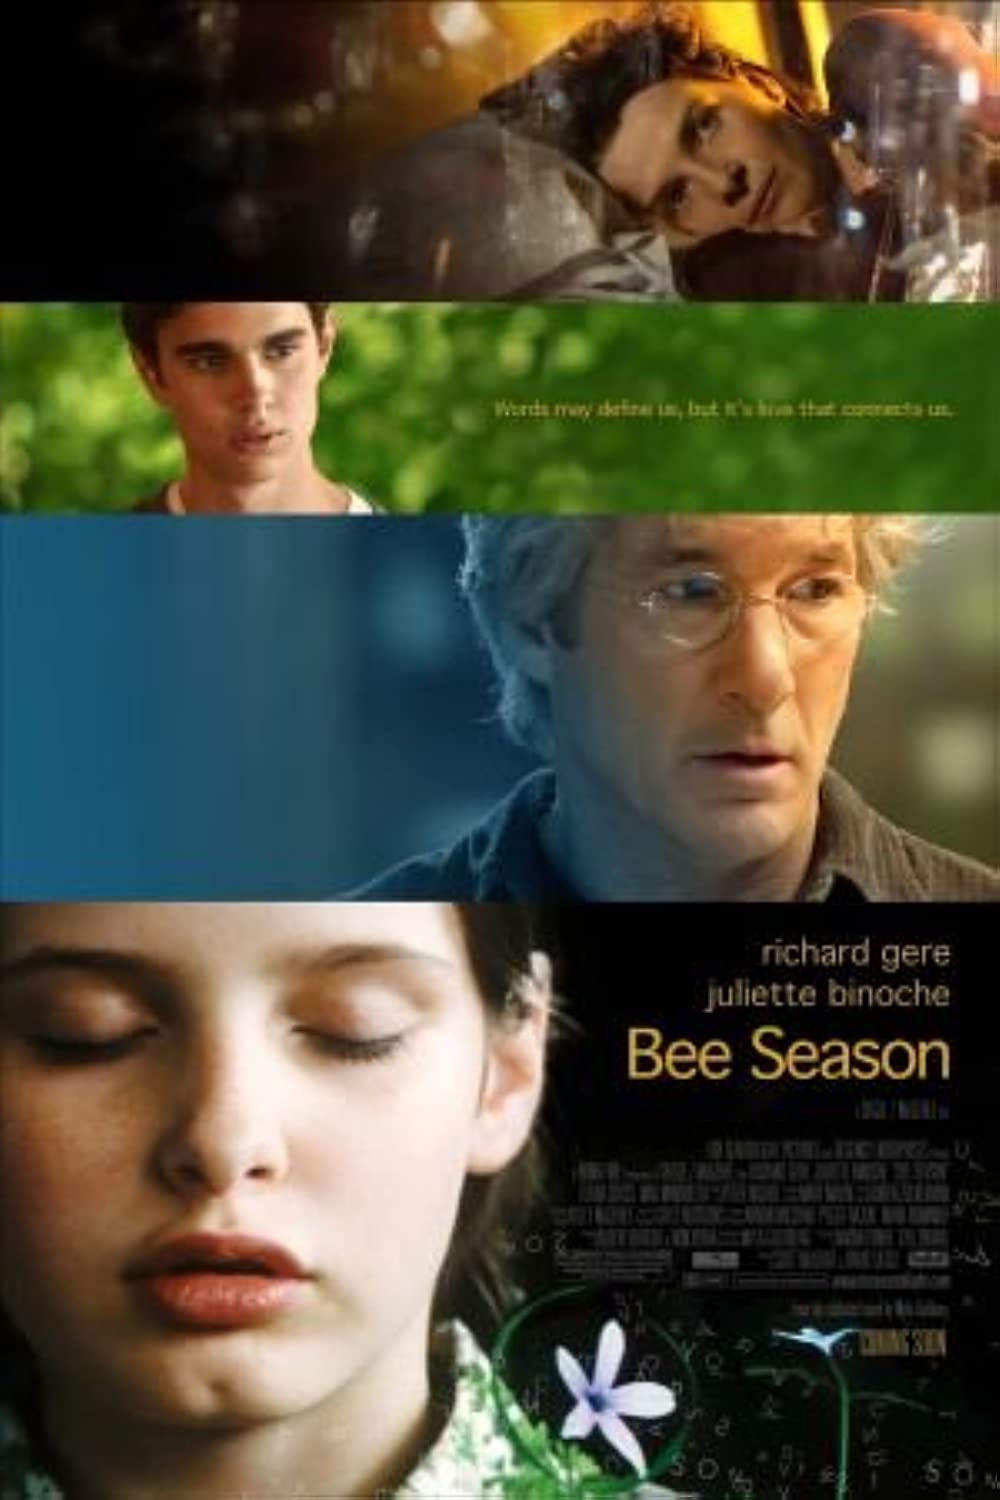 Filmbeschreibung zu Bee Season - Die Buchstabenprinzessin